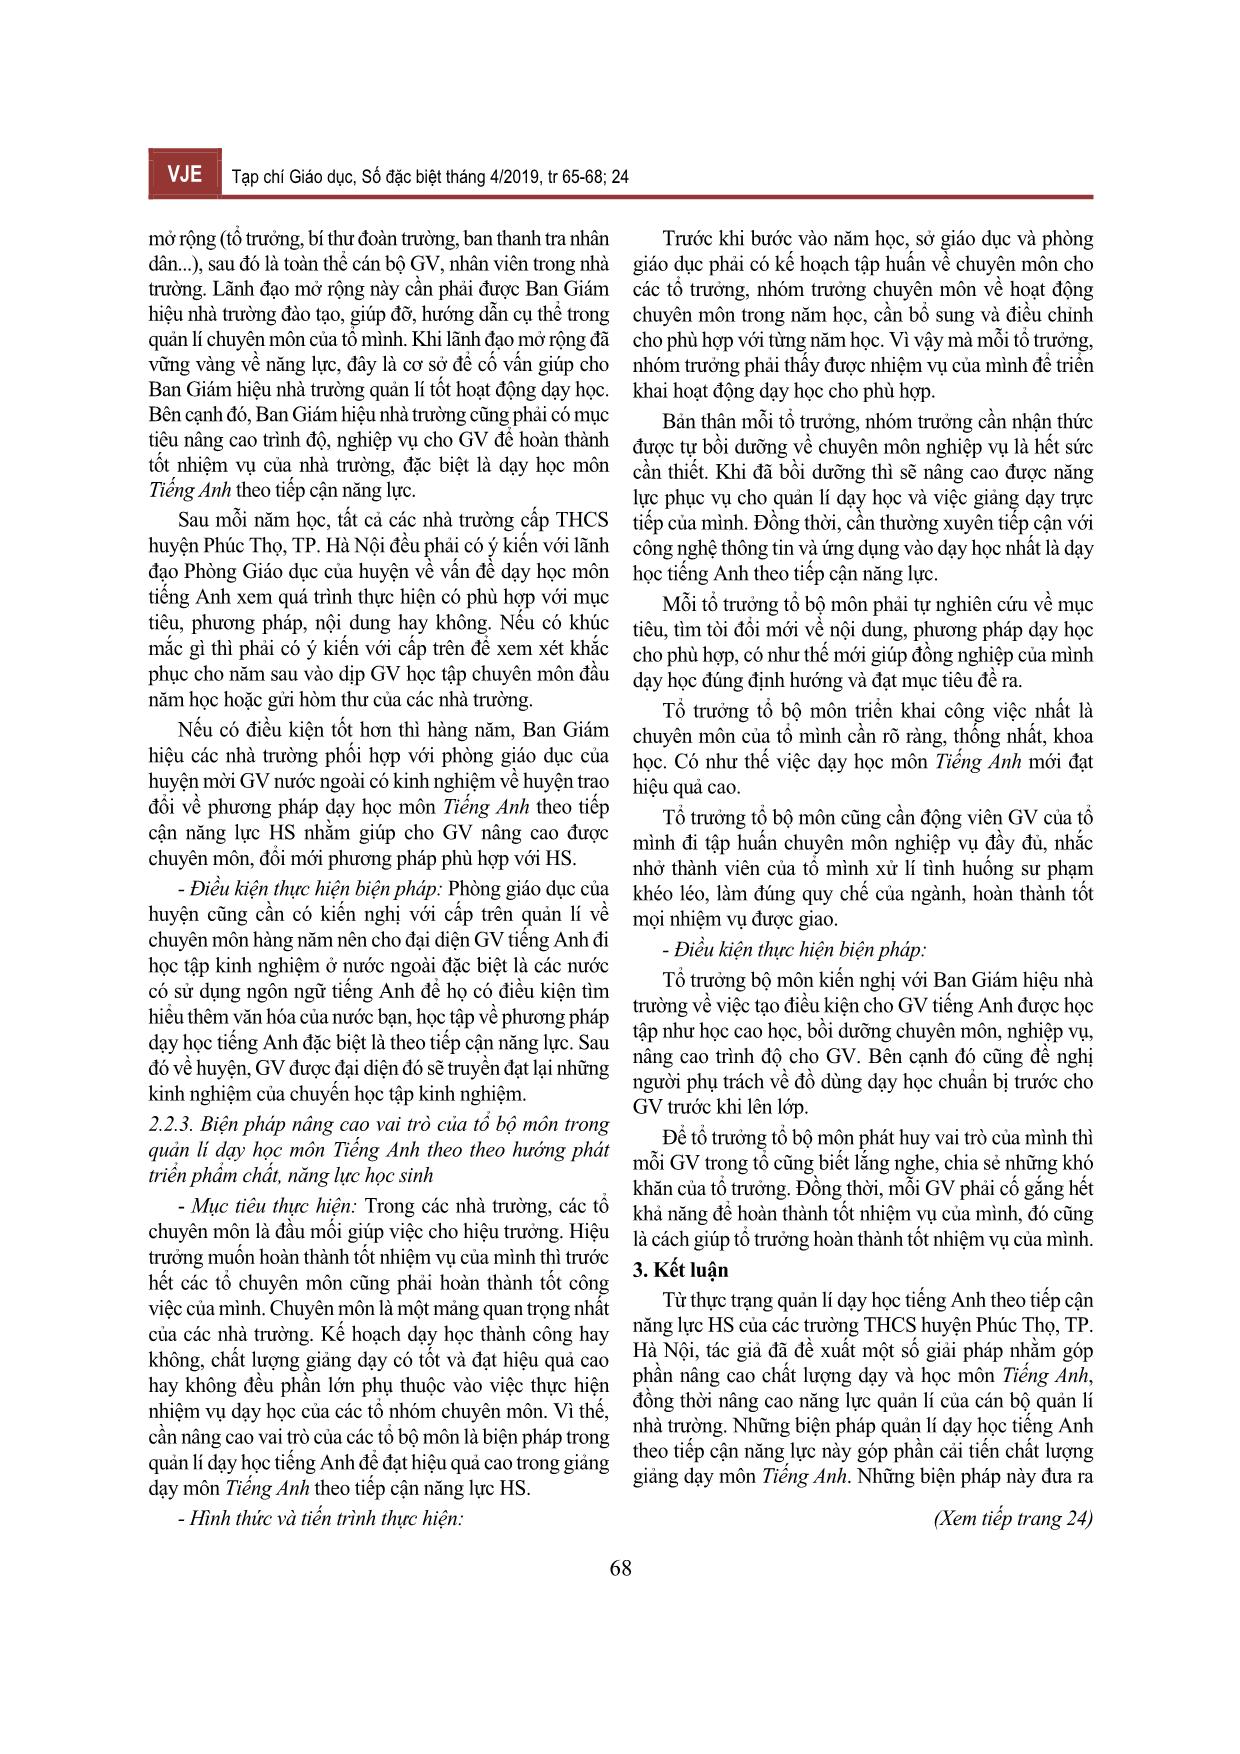 Biện pháp quản lí dạy học môn Tiếng Anh theo tiếp cận năng lực học sinh ở các trường Trung học cơ sở huyện Phúc Thọ, thành phố Hà Nội trang 4